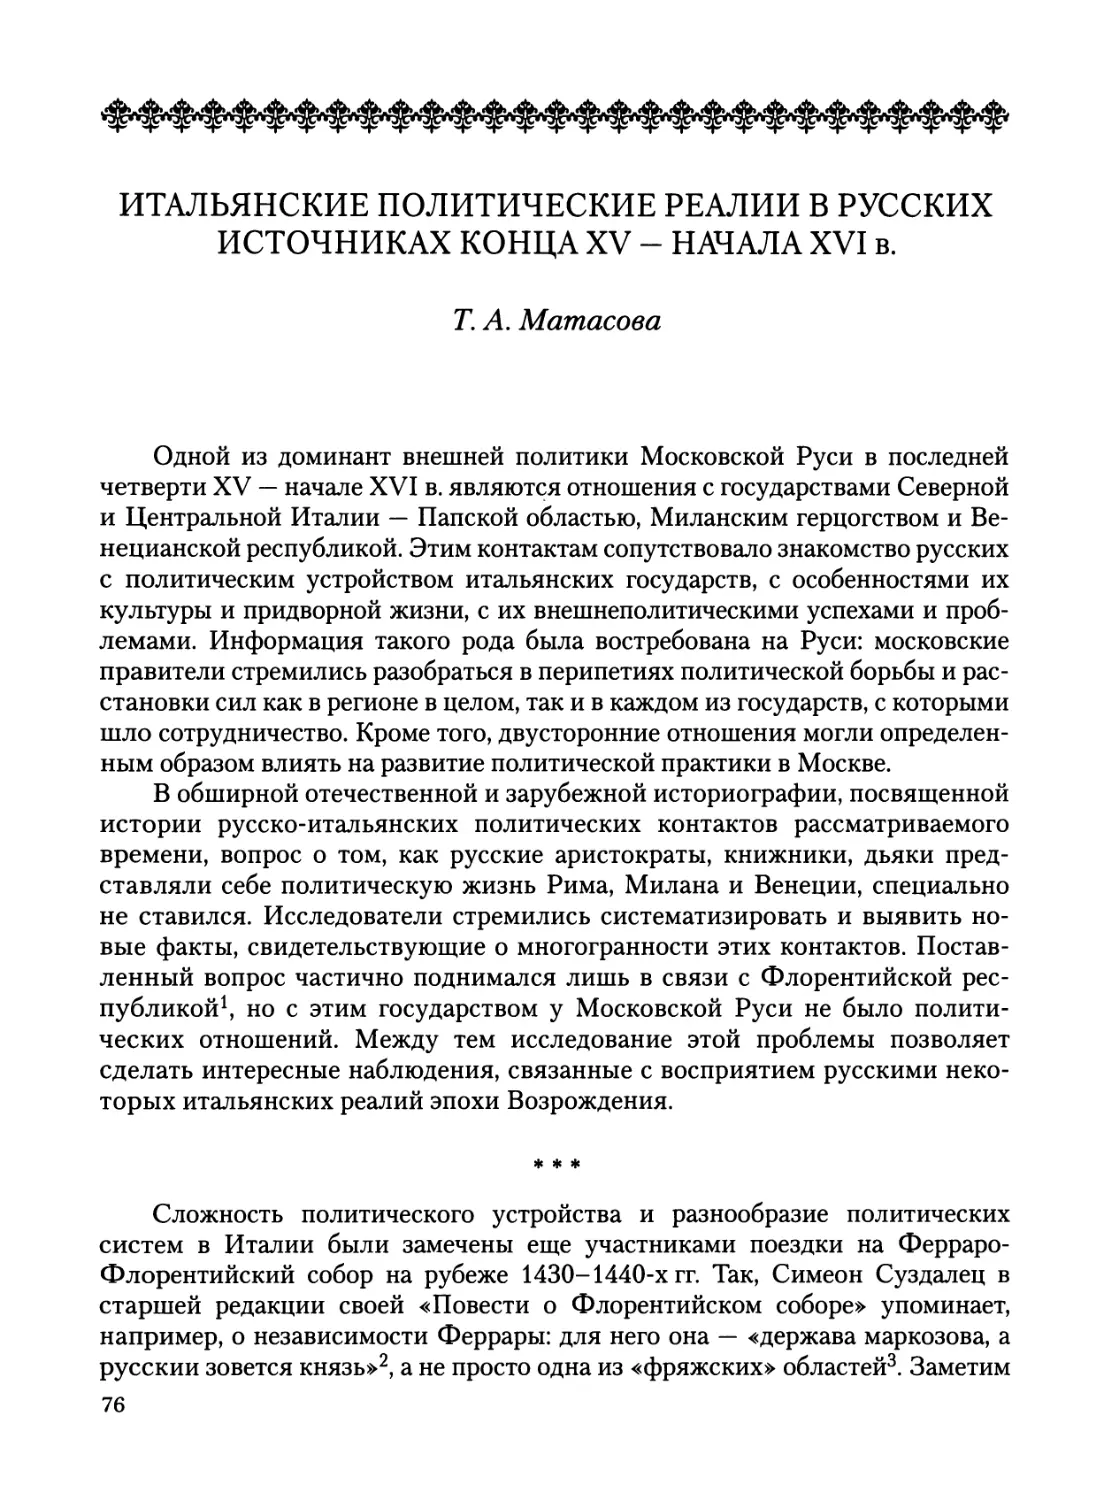 Матасова Т. А. Итальянские политические реалии в русских источниках конца XV — начала XVI в.